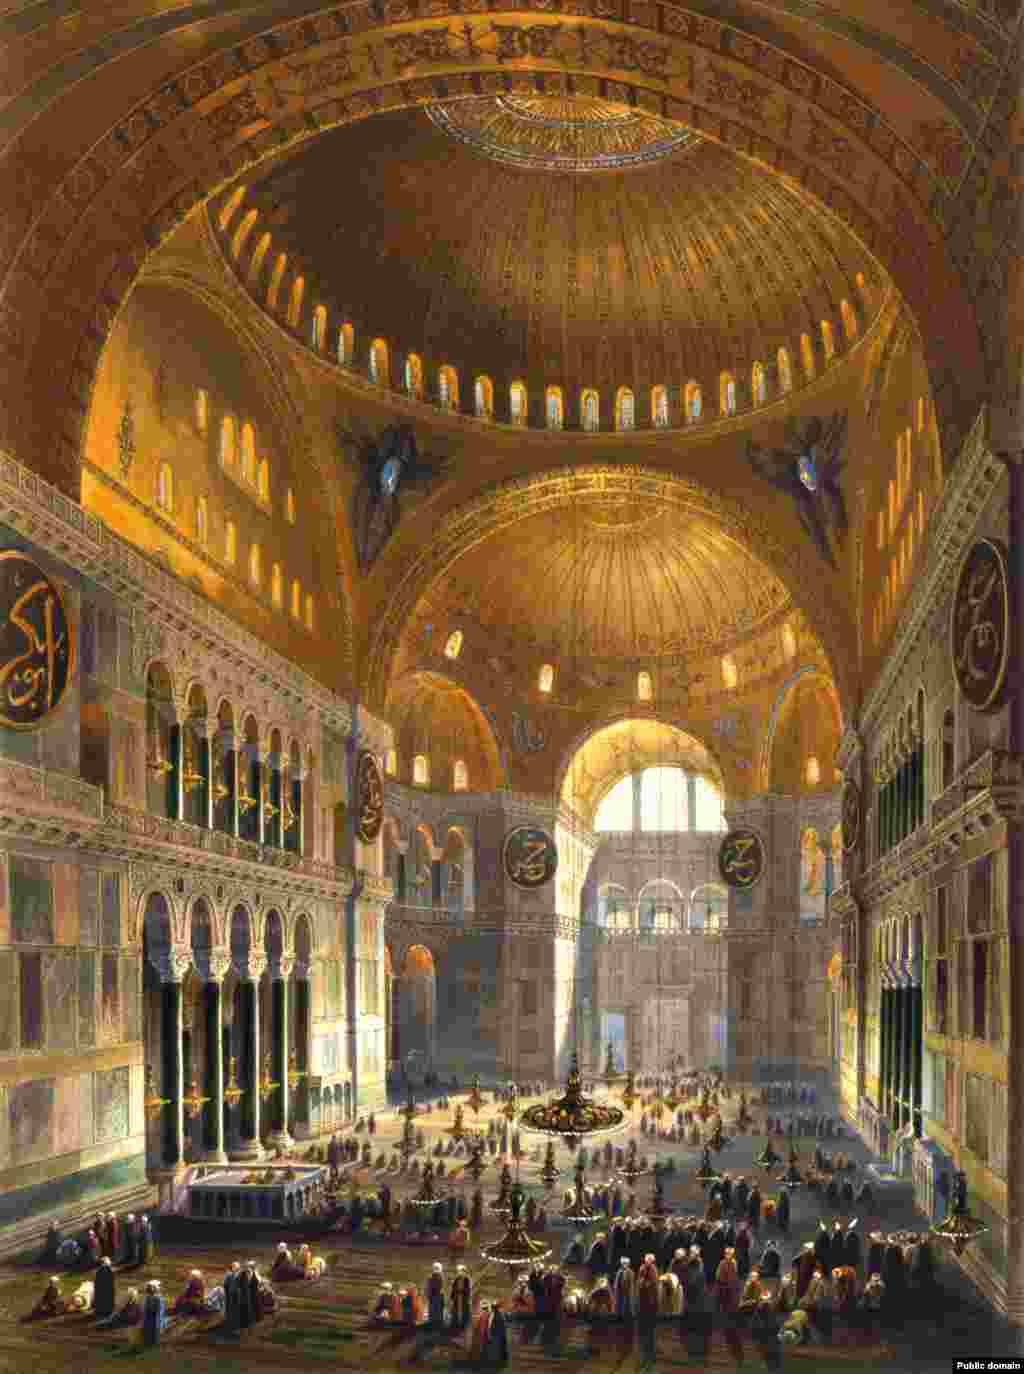 1852- musulmani care se rugau în Hagia Sophia pe când aceasta era o moschee. Timp de aproape 500 de ani, Hagia Sophia a fost moschee, iar iconografia creștină din interior a fost acoperită cu tencuială sau distrusă. &nbsp;